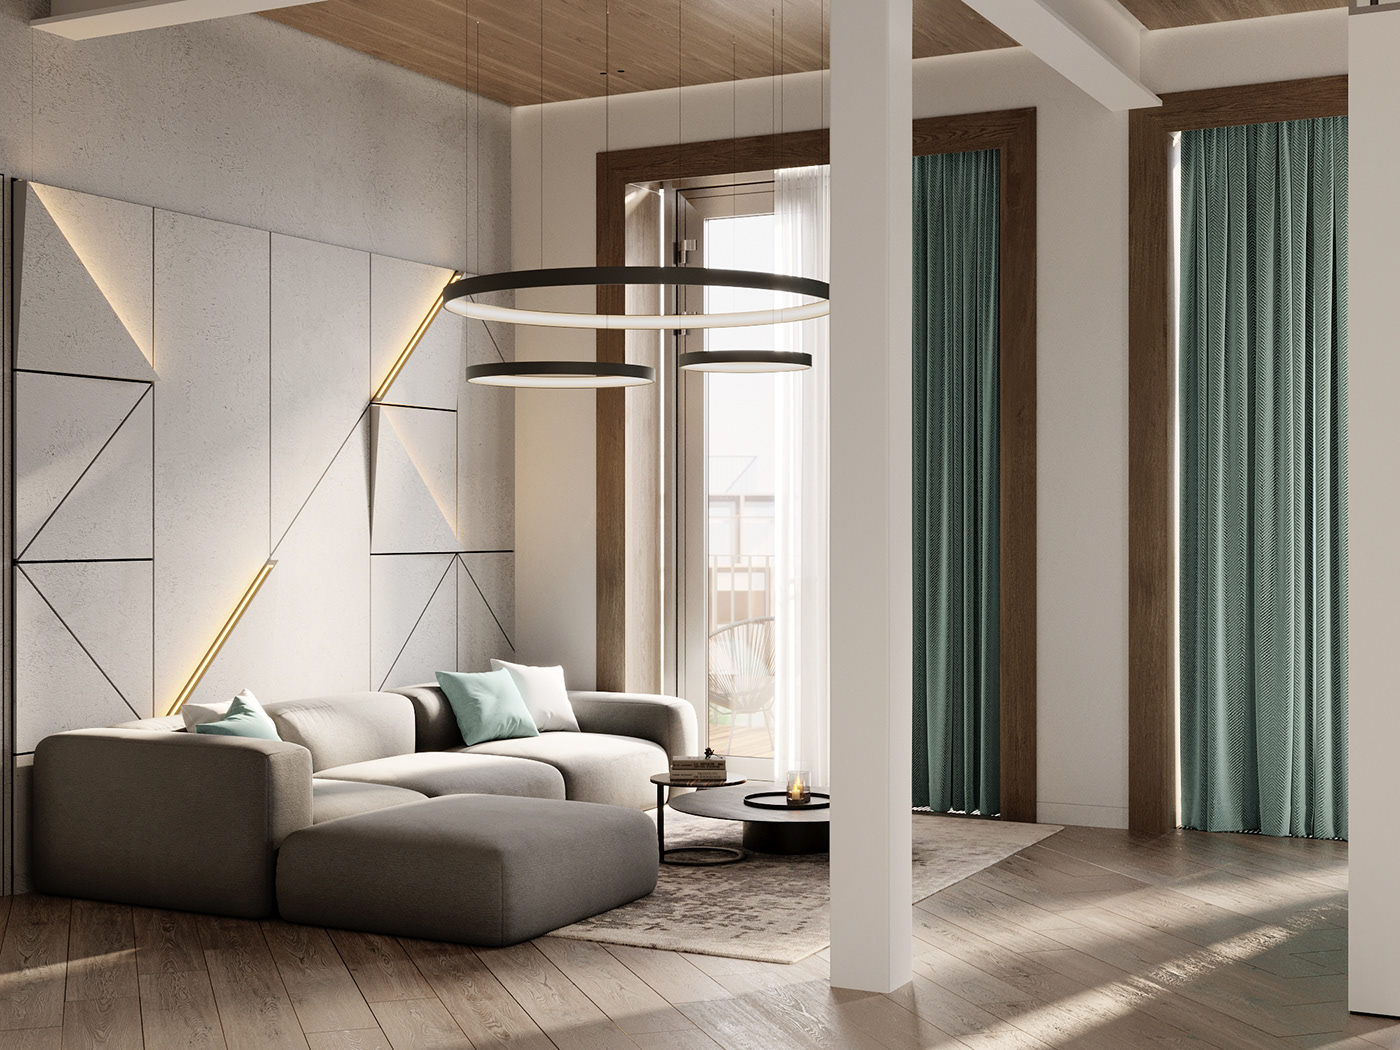 3ds max corona interior design  Render visualization